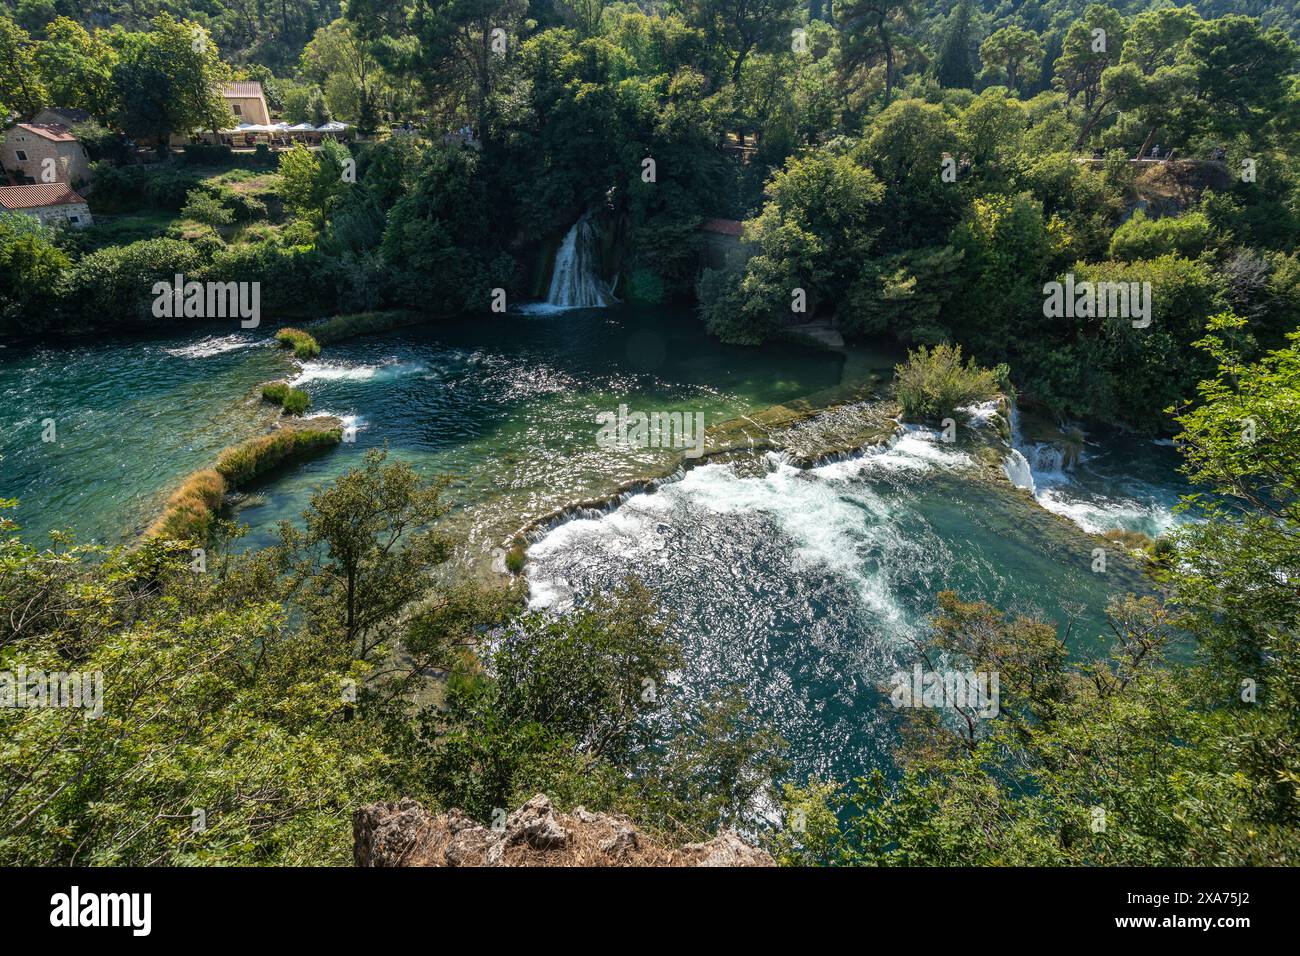 Der Krka-Fluss schlängelt sich anmutig durch einen lebendigen Wald im Krka-Nationalpark, Kroatien Stockfoto